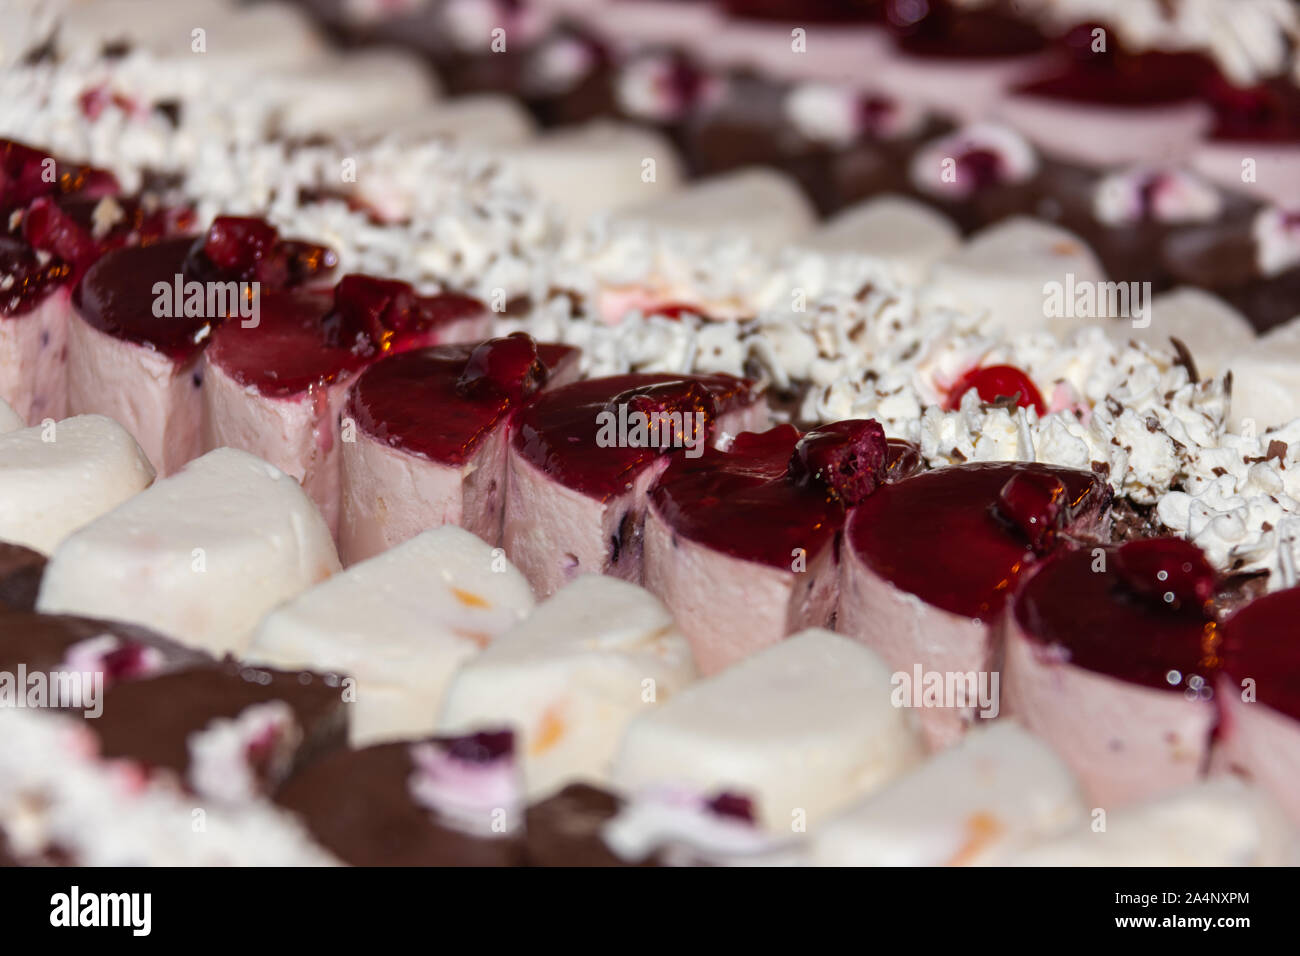 Eingerichtete Platte mit verschiedenen Kuchen, Marmelade und Kirschen Stockfoto